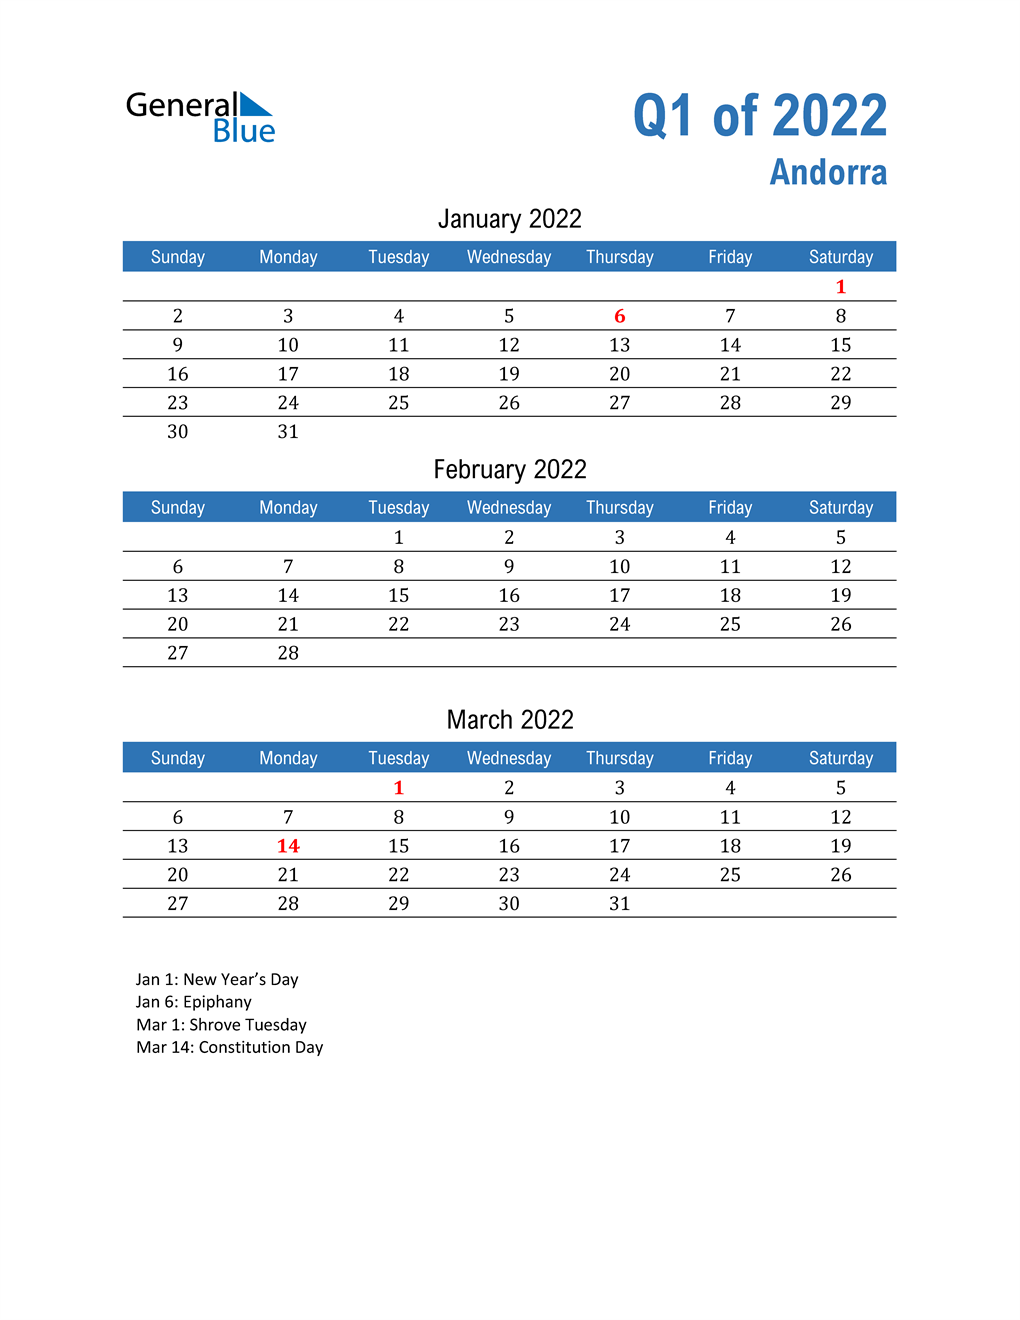  Andorra 2022 Quarterly Calendar 